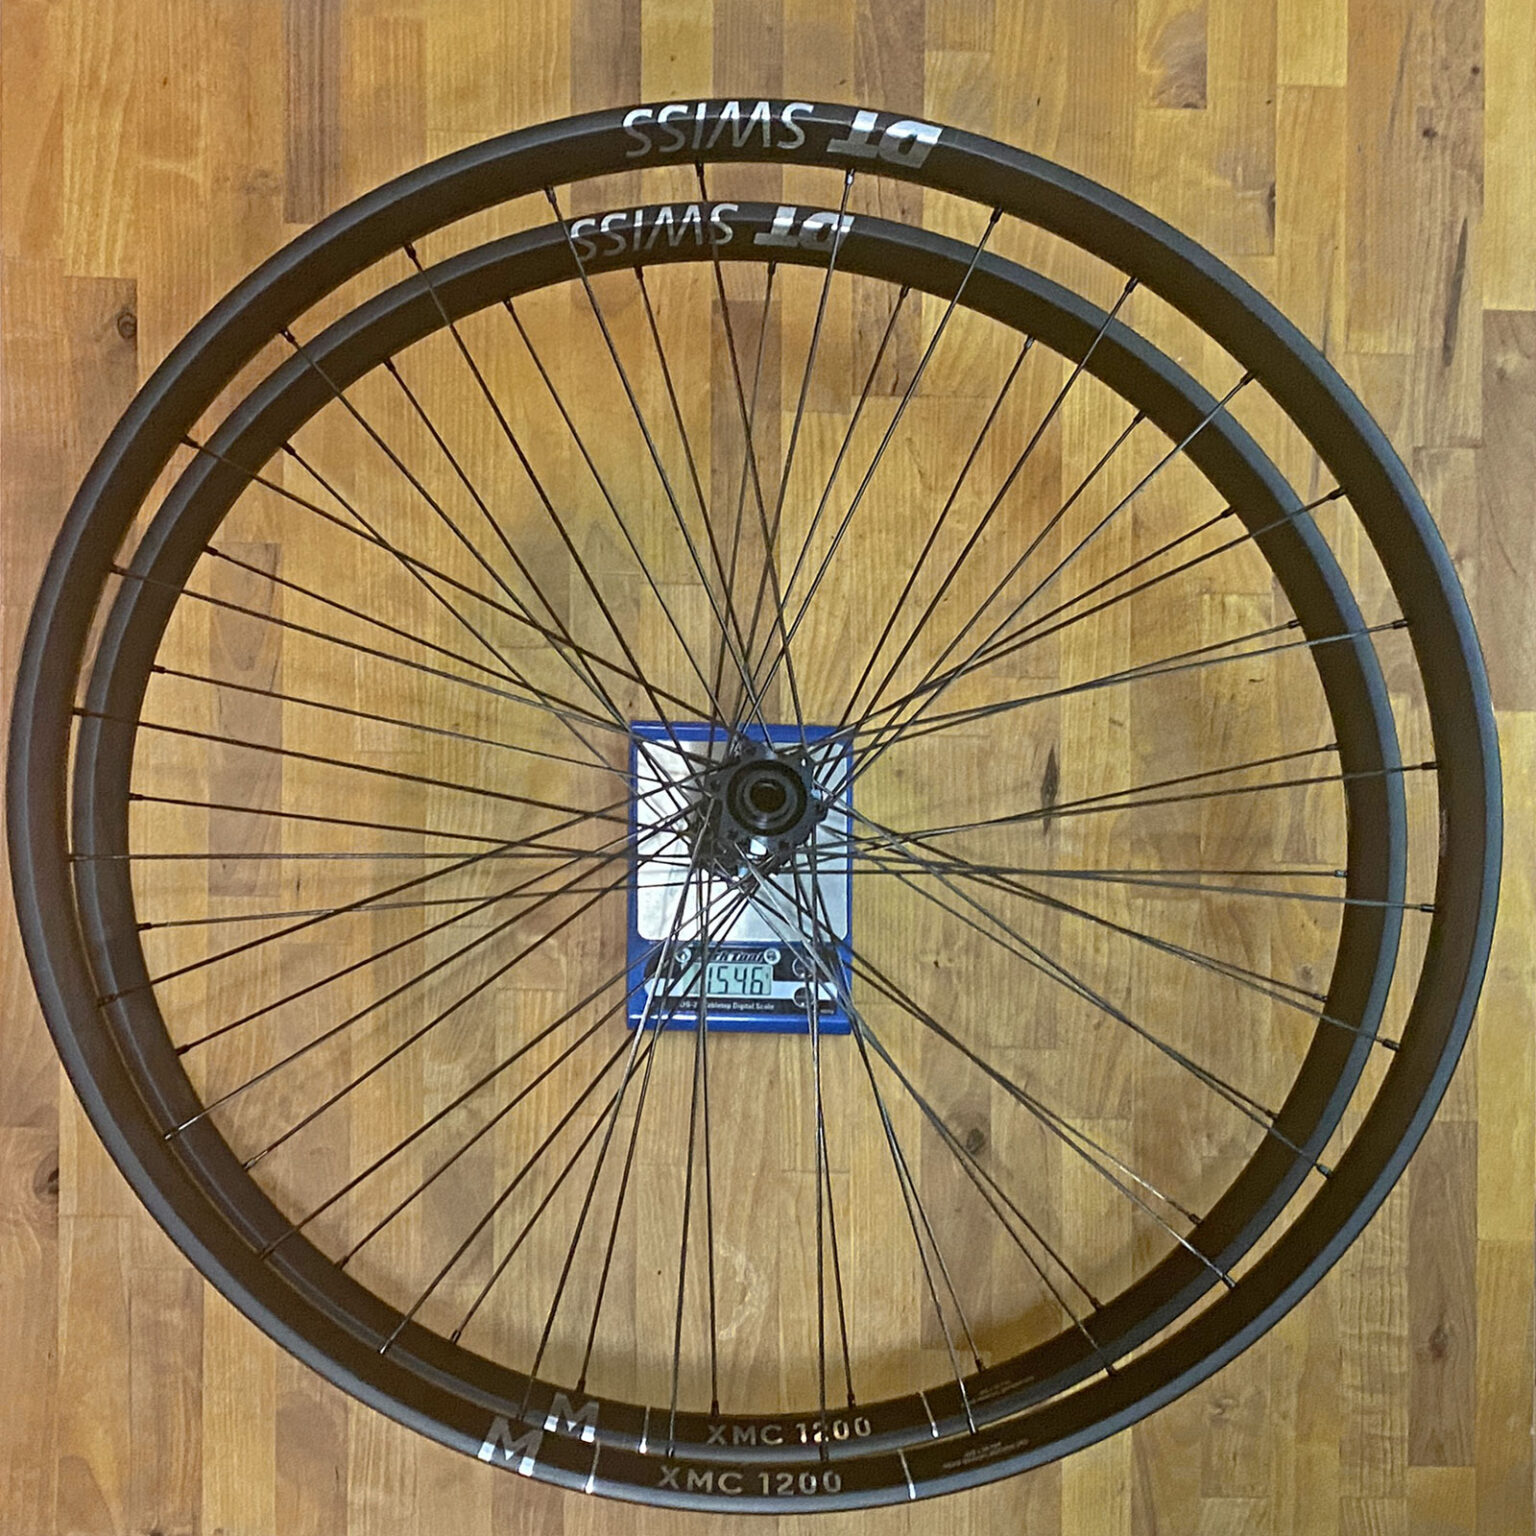 All-new DT Swiss XMC 1200 lightweight carbon all-mountain bike wheels, 1546g actual weight